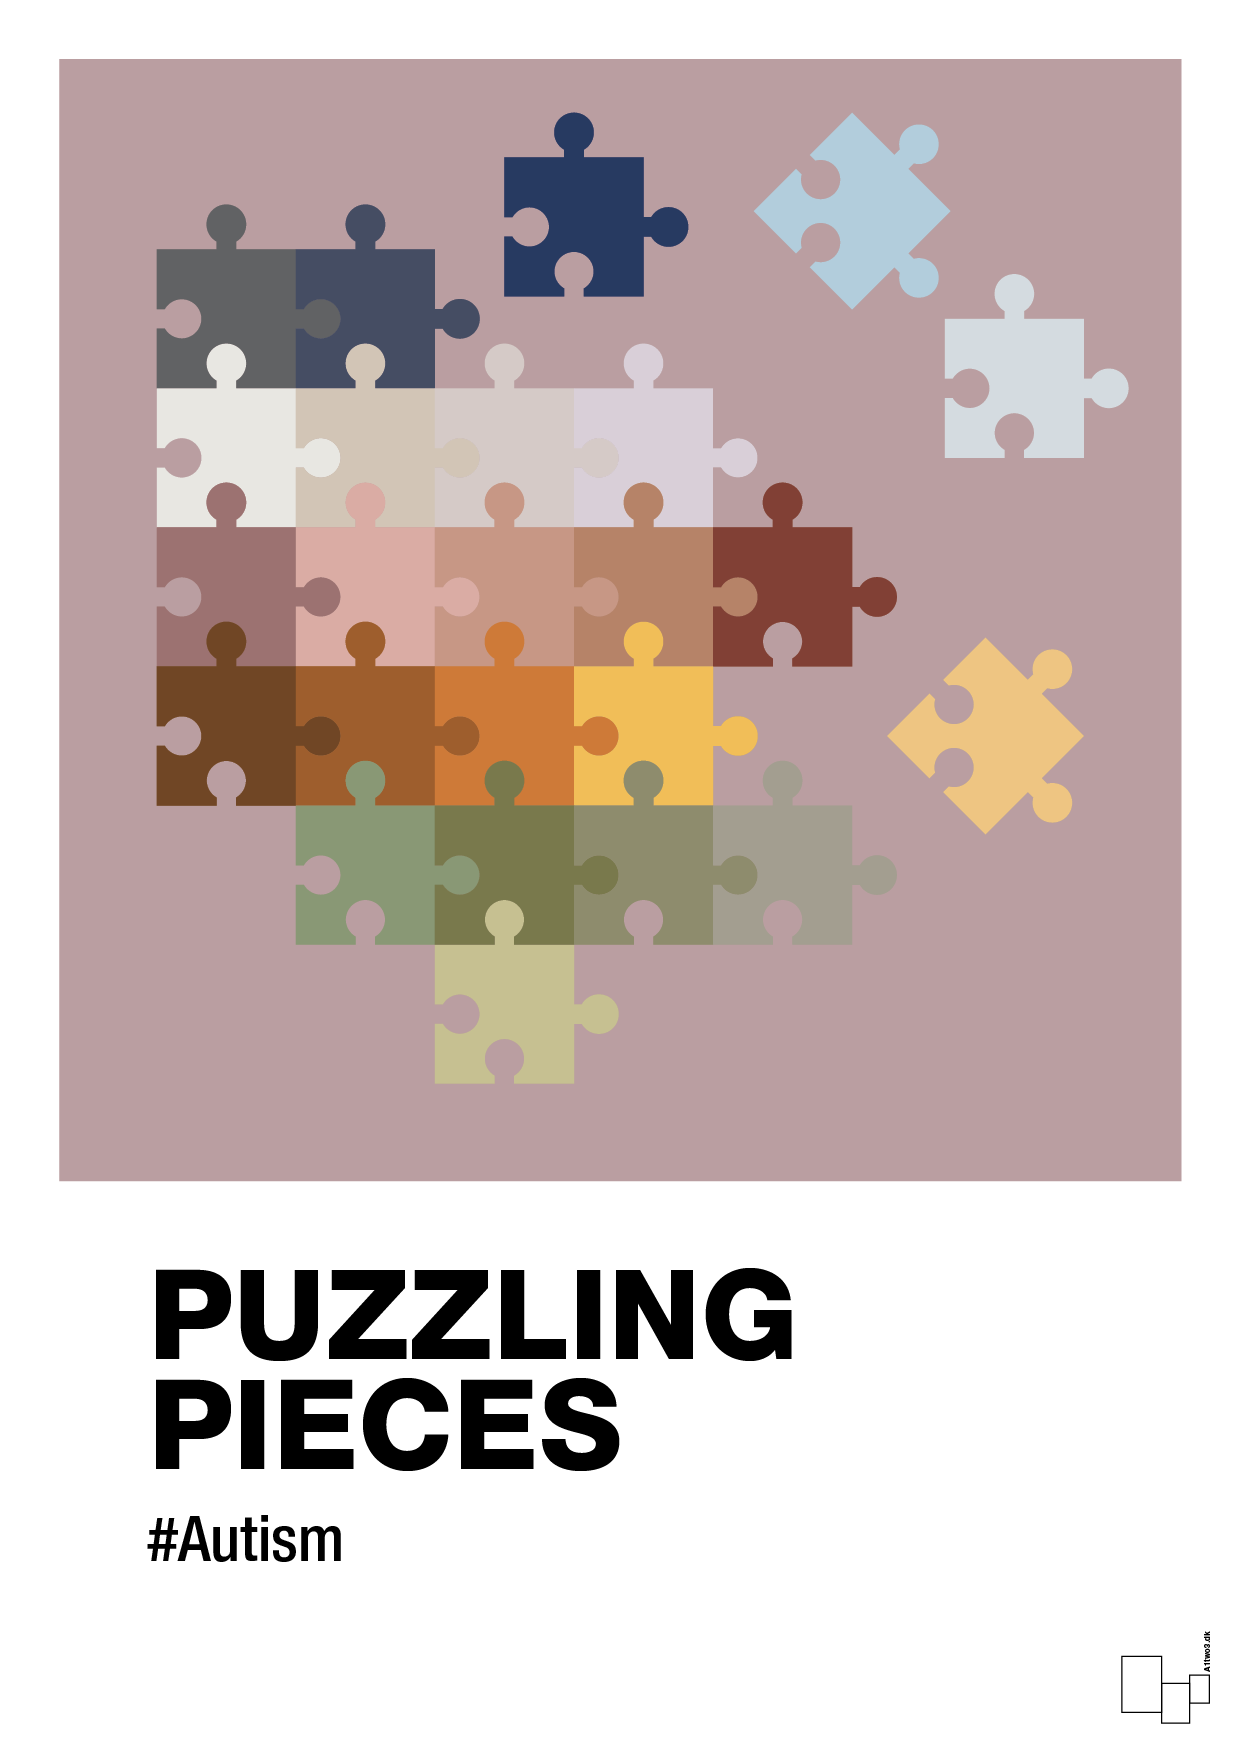 puzzling pieces - Plakat med Samfund i Light Rose